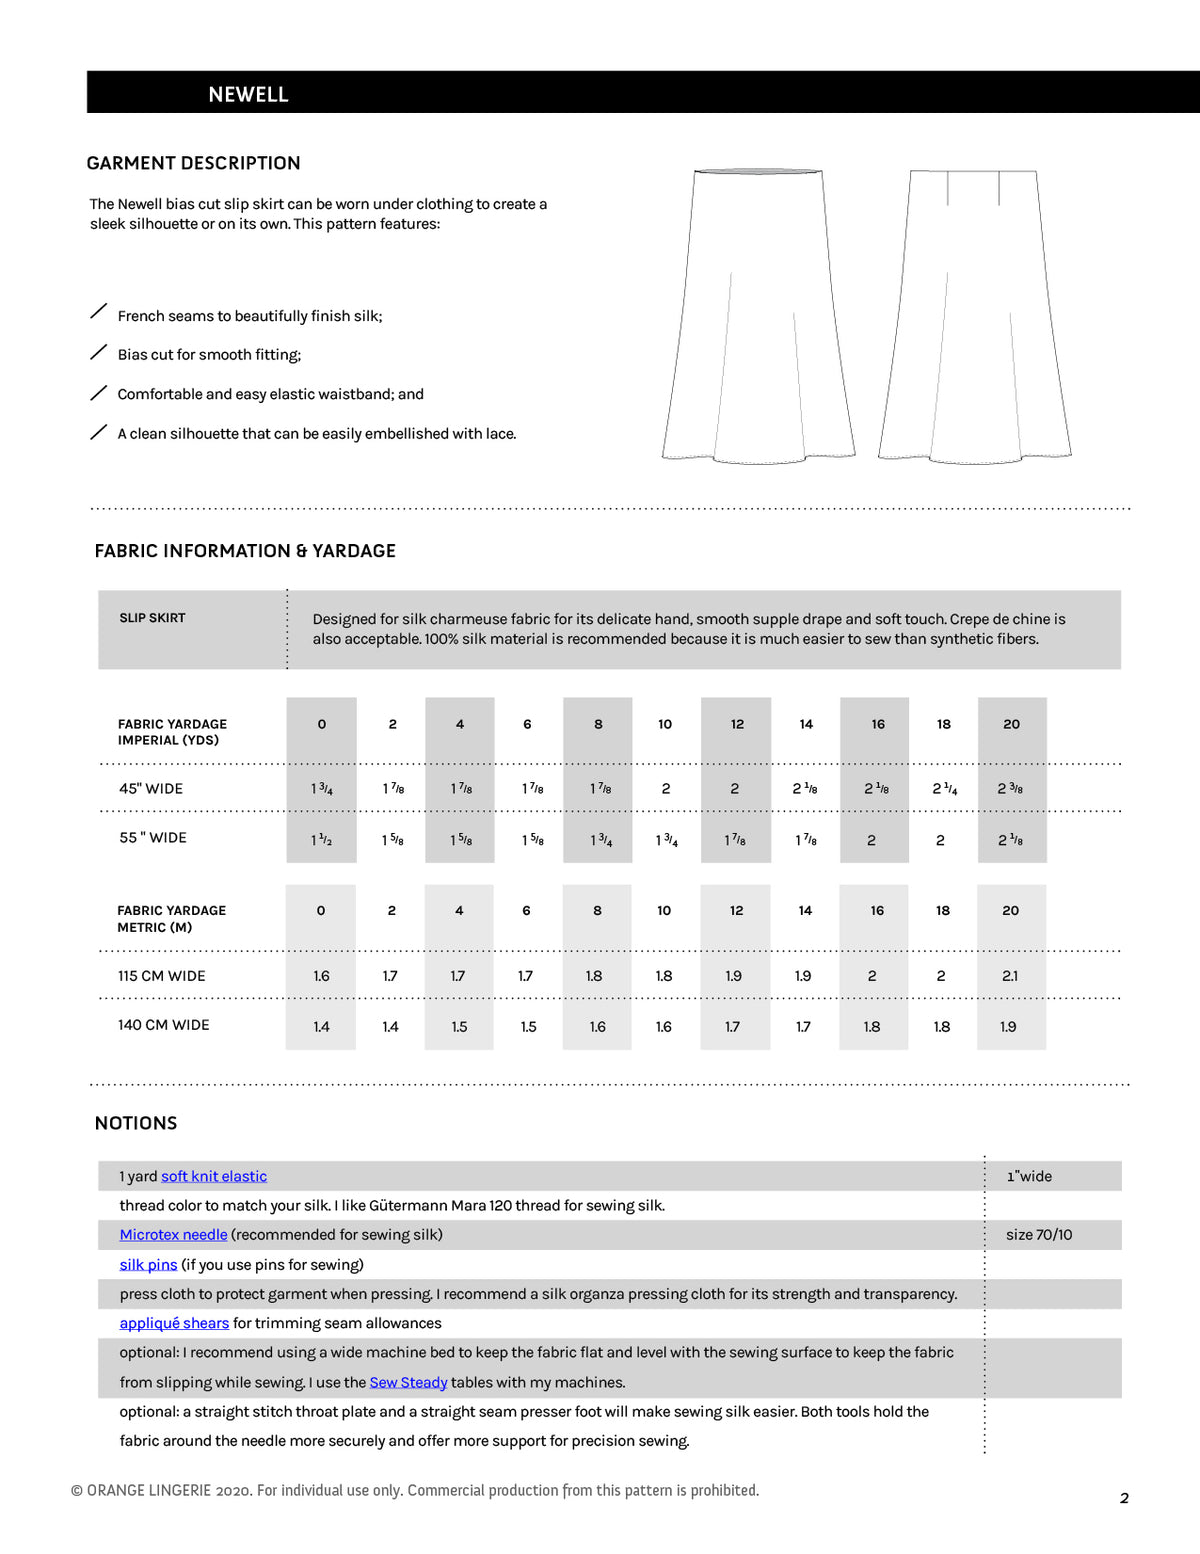 Materials for Newell Slip Skirt by Orange Lingerie